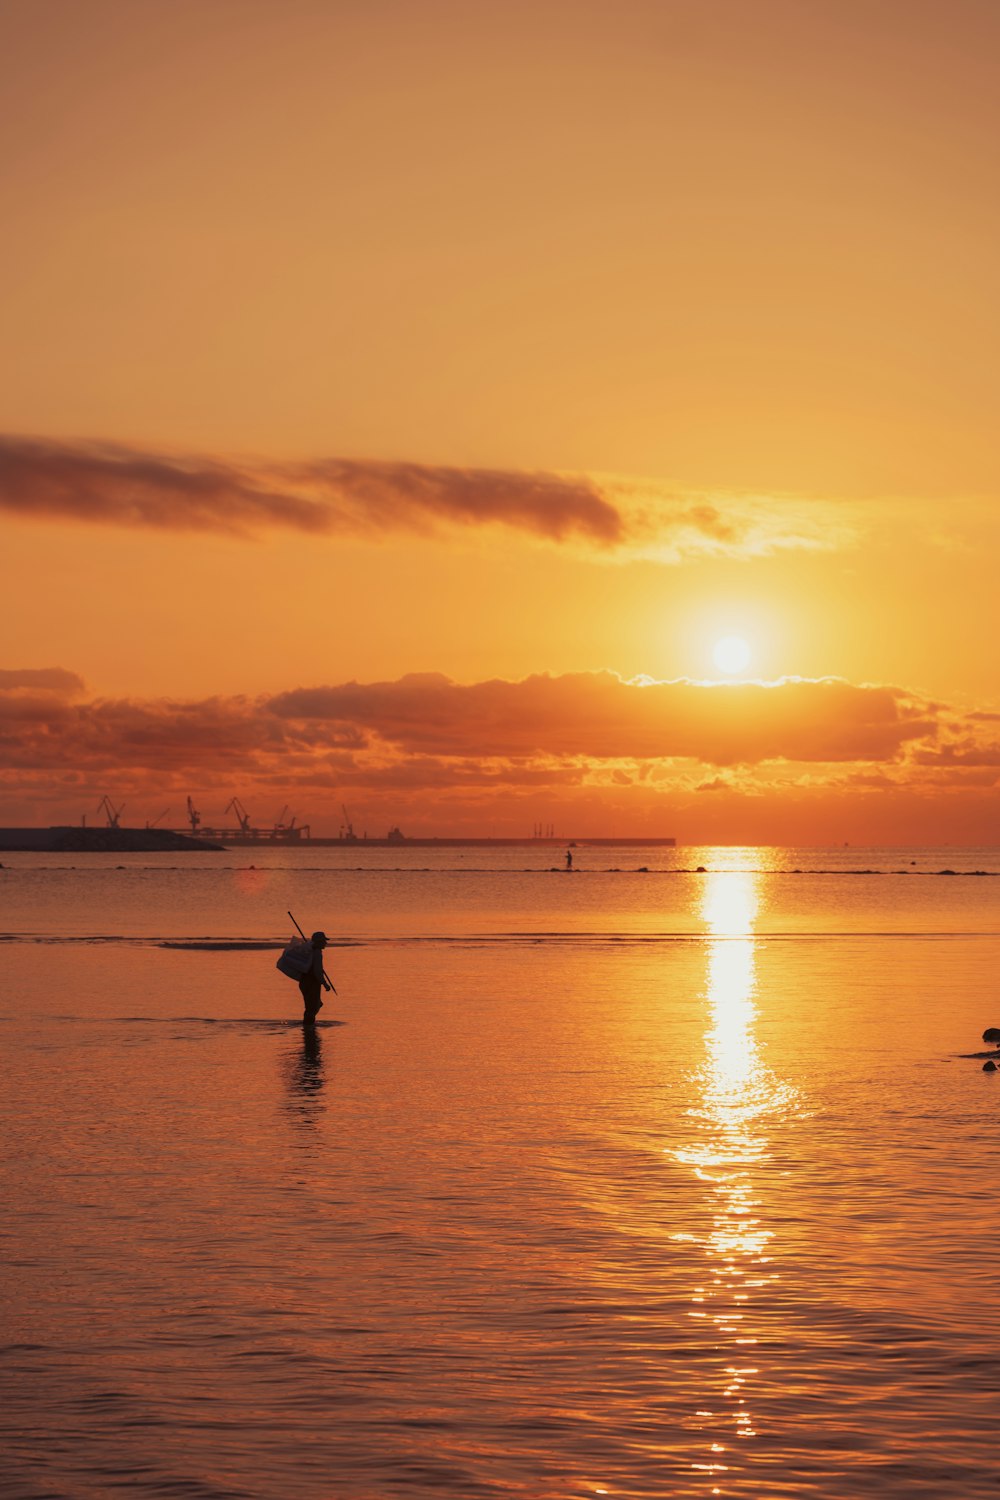 une personne sur une planche de surf dans l’eau au coucher du soleil